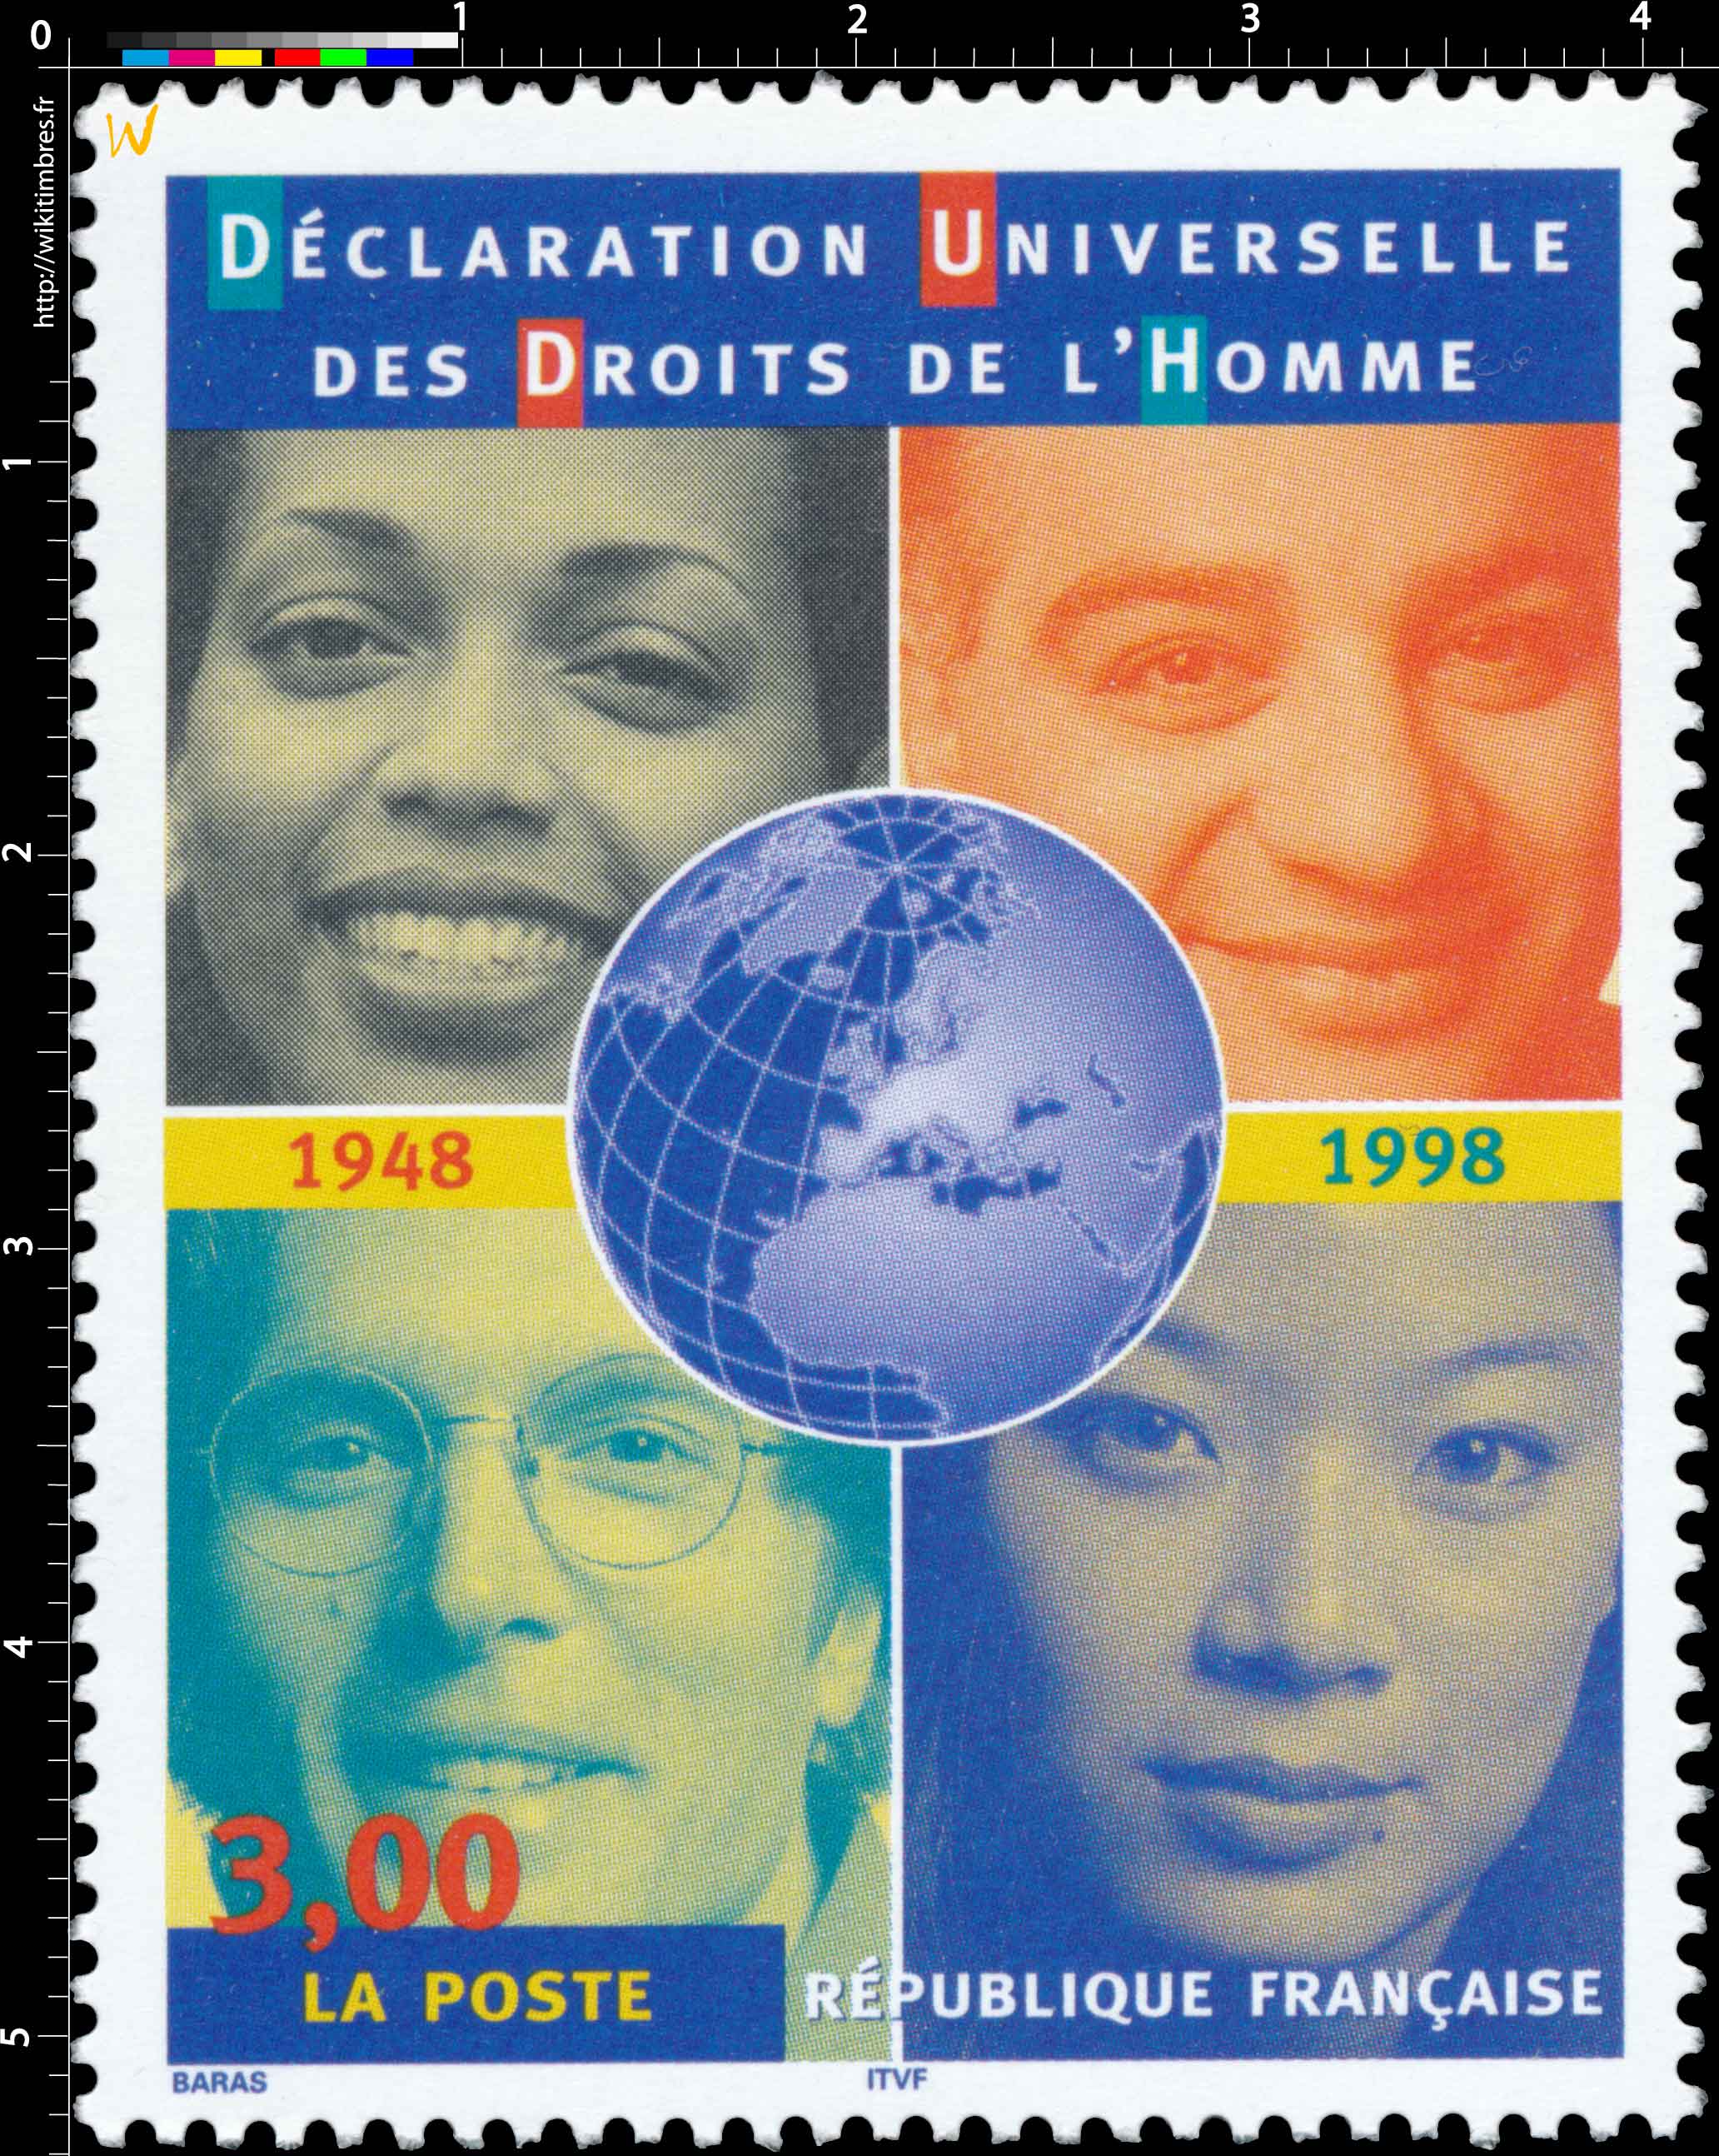 DÉCLARATION UNIVERSELLE DES DROITS DE L'HOMME 1848 1998